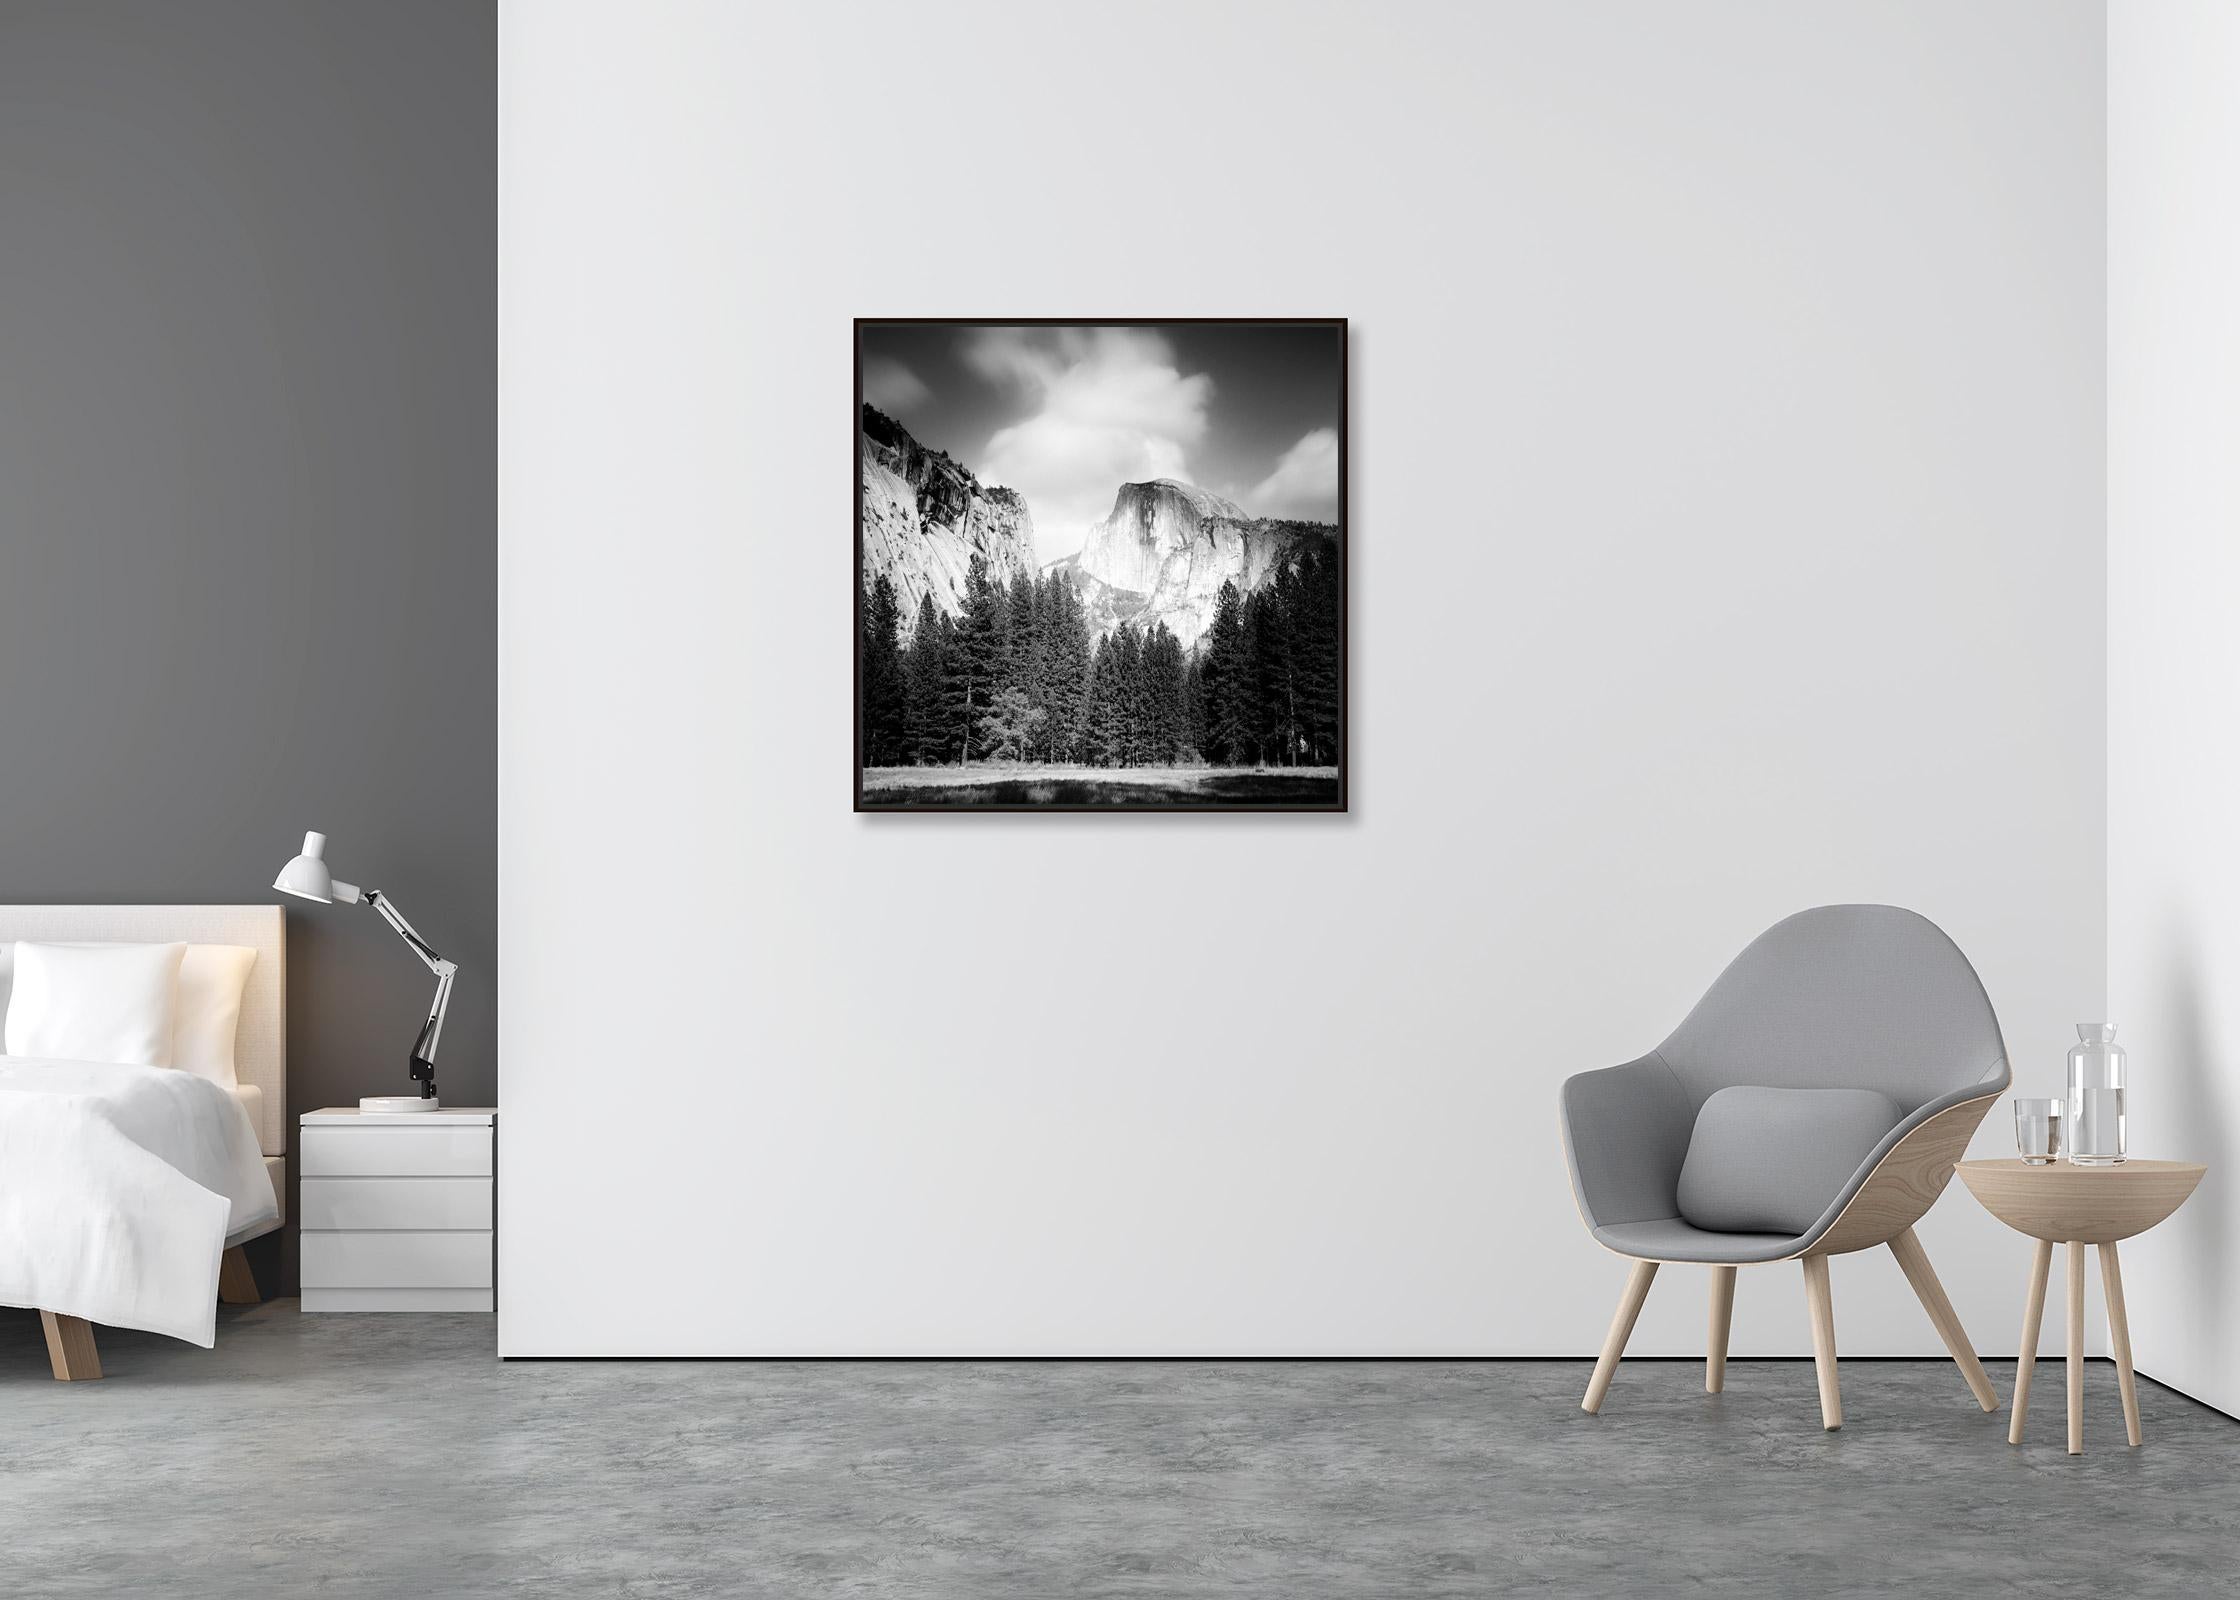 Half Dome, Yosemite National Park, États-Unis, photographies de paysages en noir et blanc - Contemporain Photograph par Gerald Berghammer